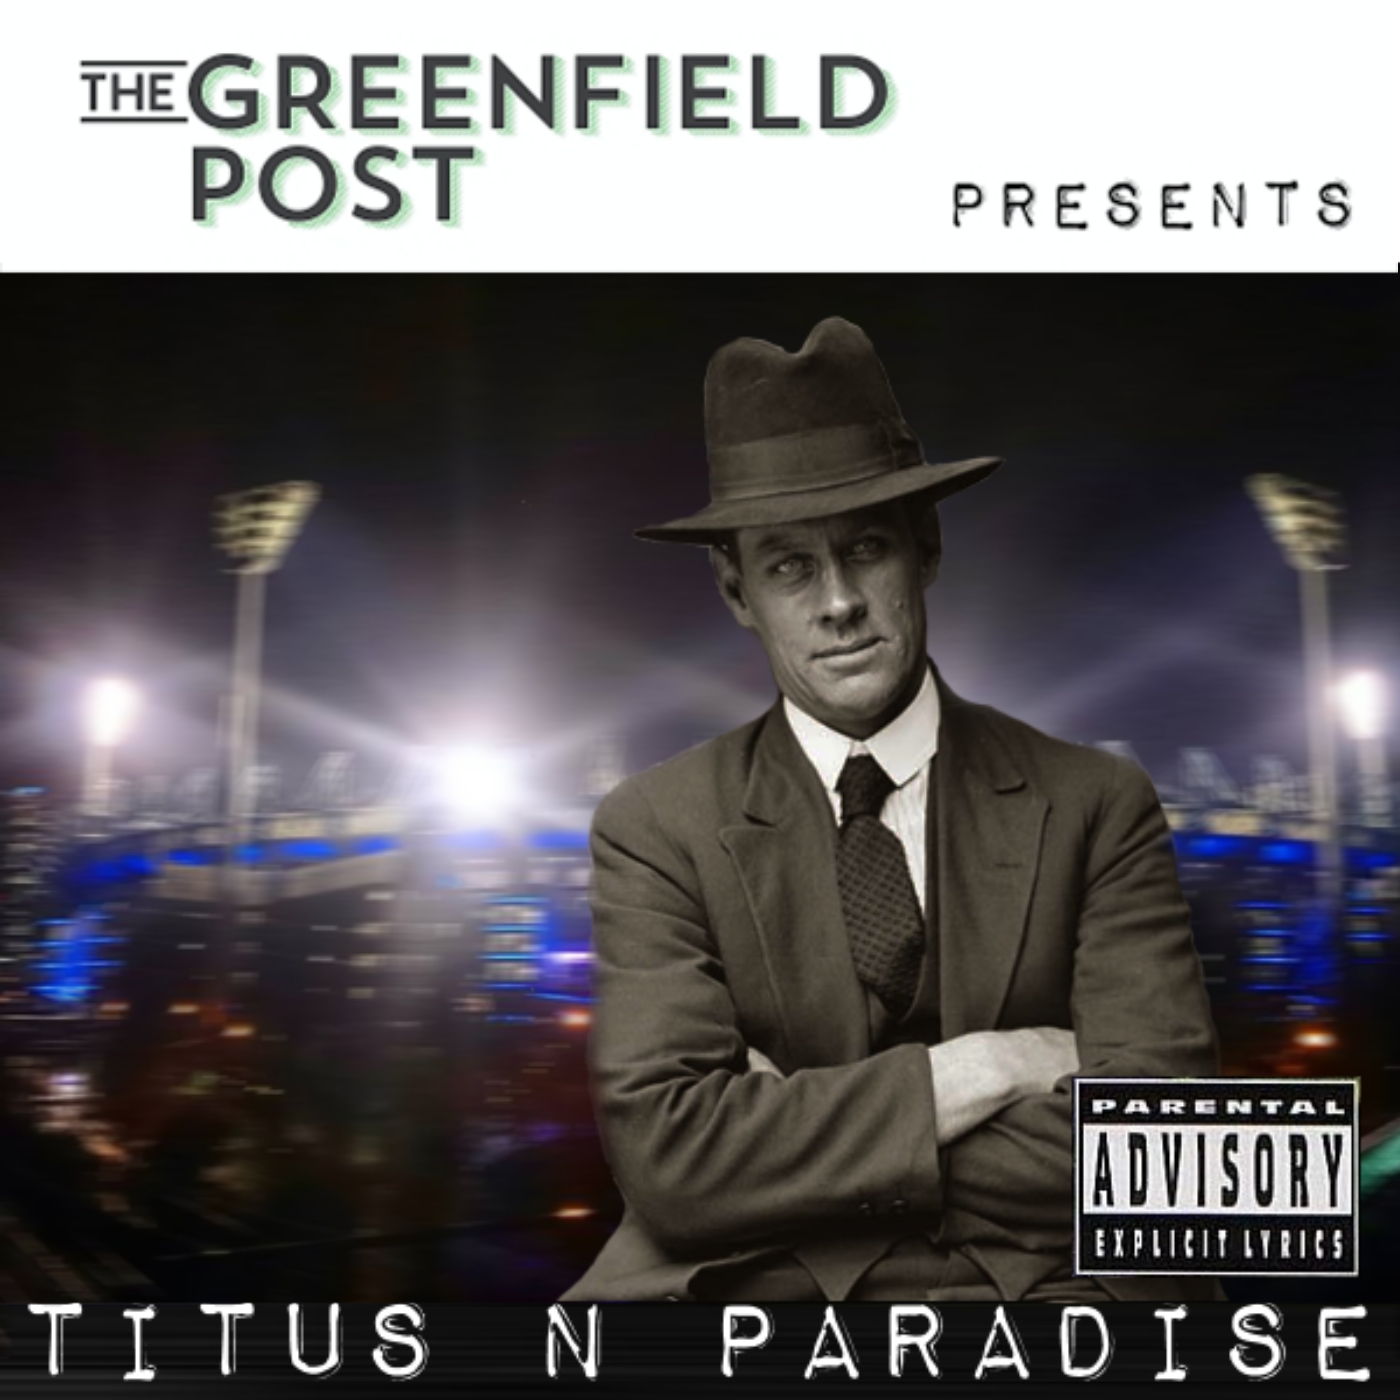 Episode 4 - Titus n Paradise, 1 September 2015